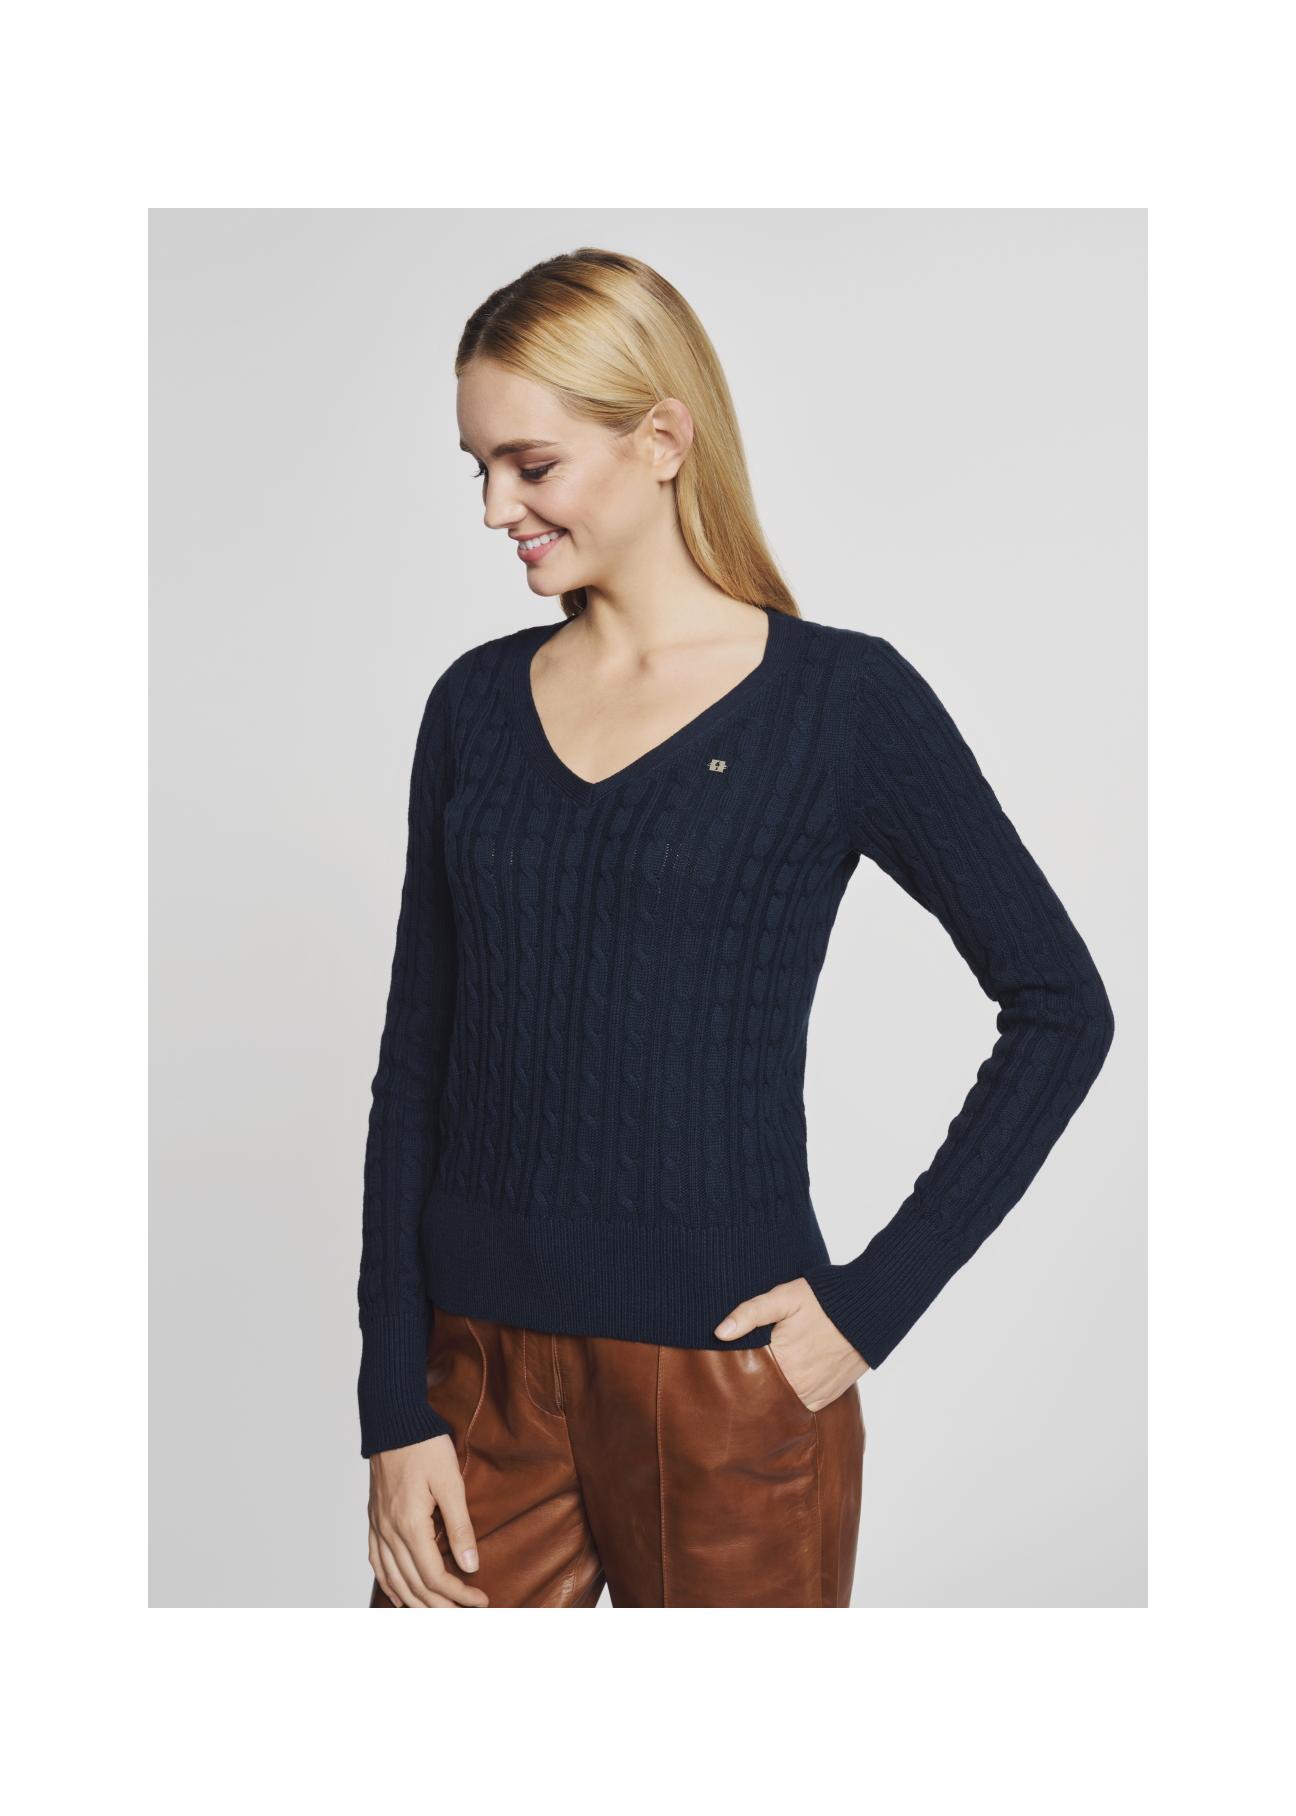 Granatowy sweter dekolt V damski SWEDT-0148-69(Z21)